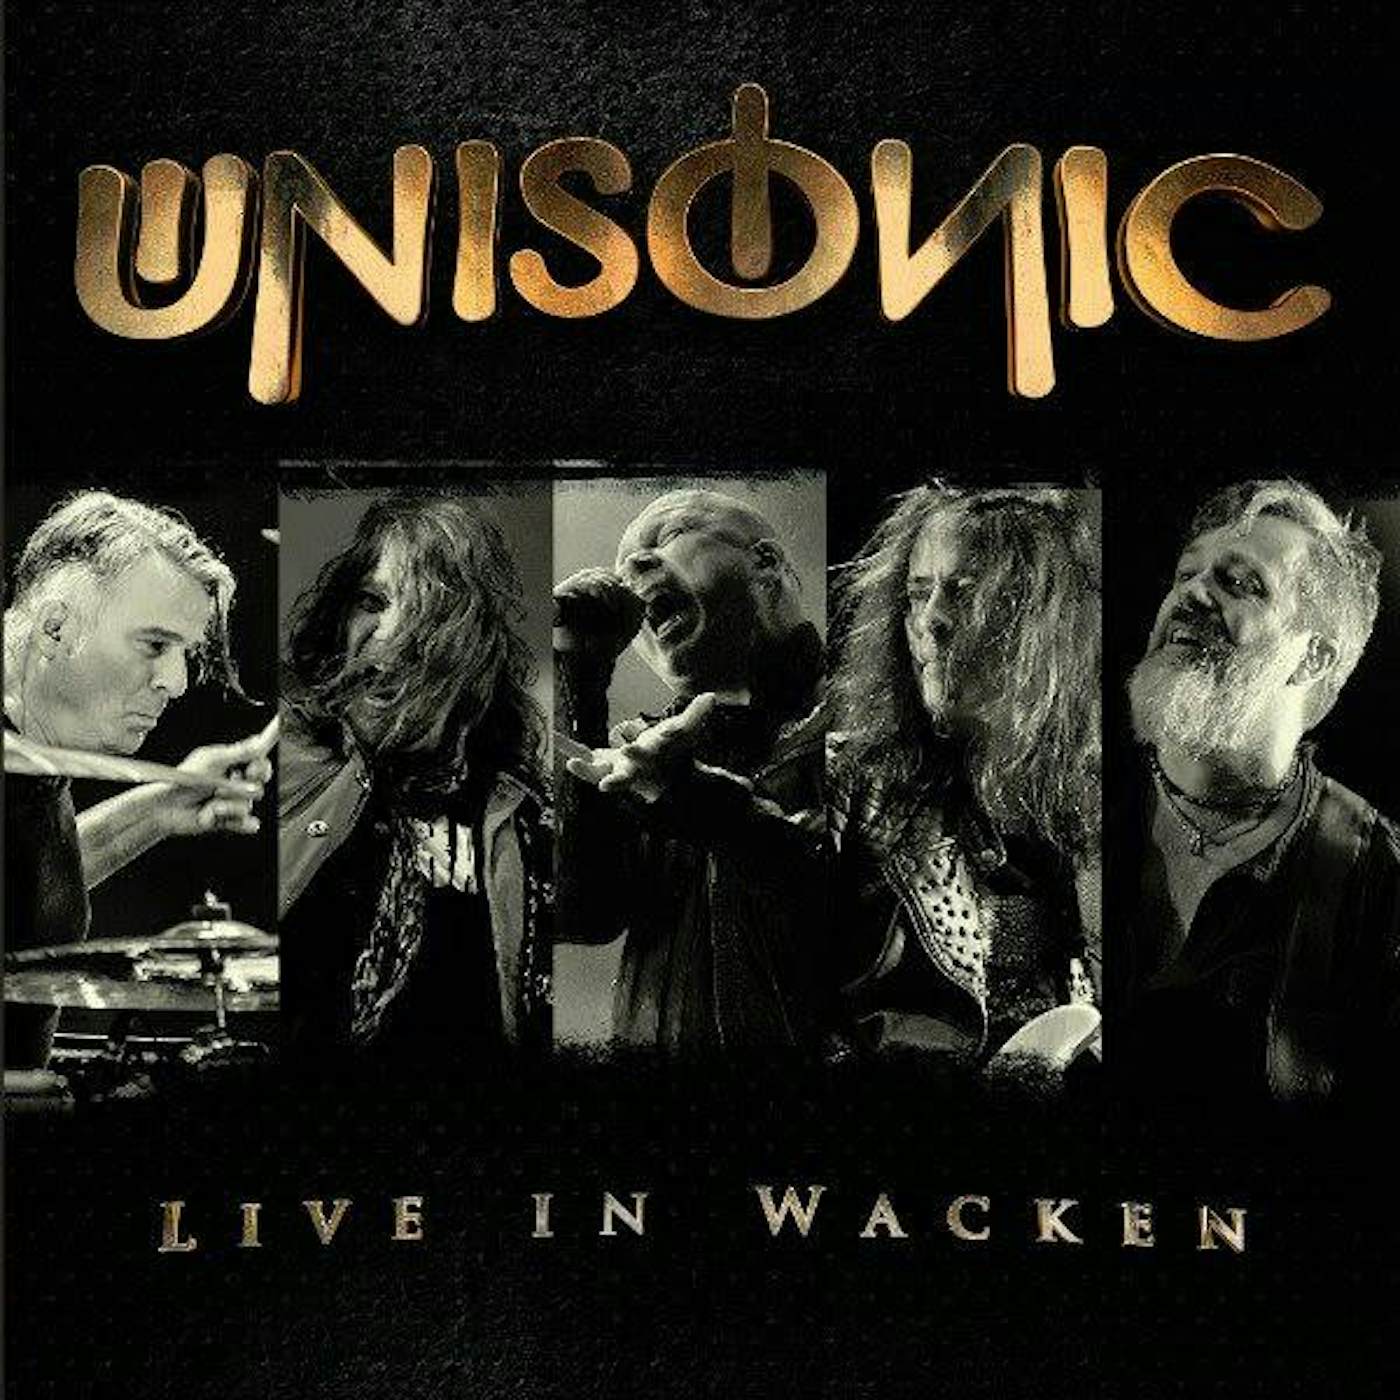 Unisonic Live In Wacken CD